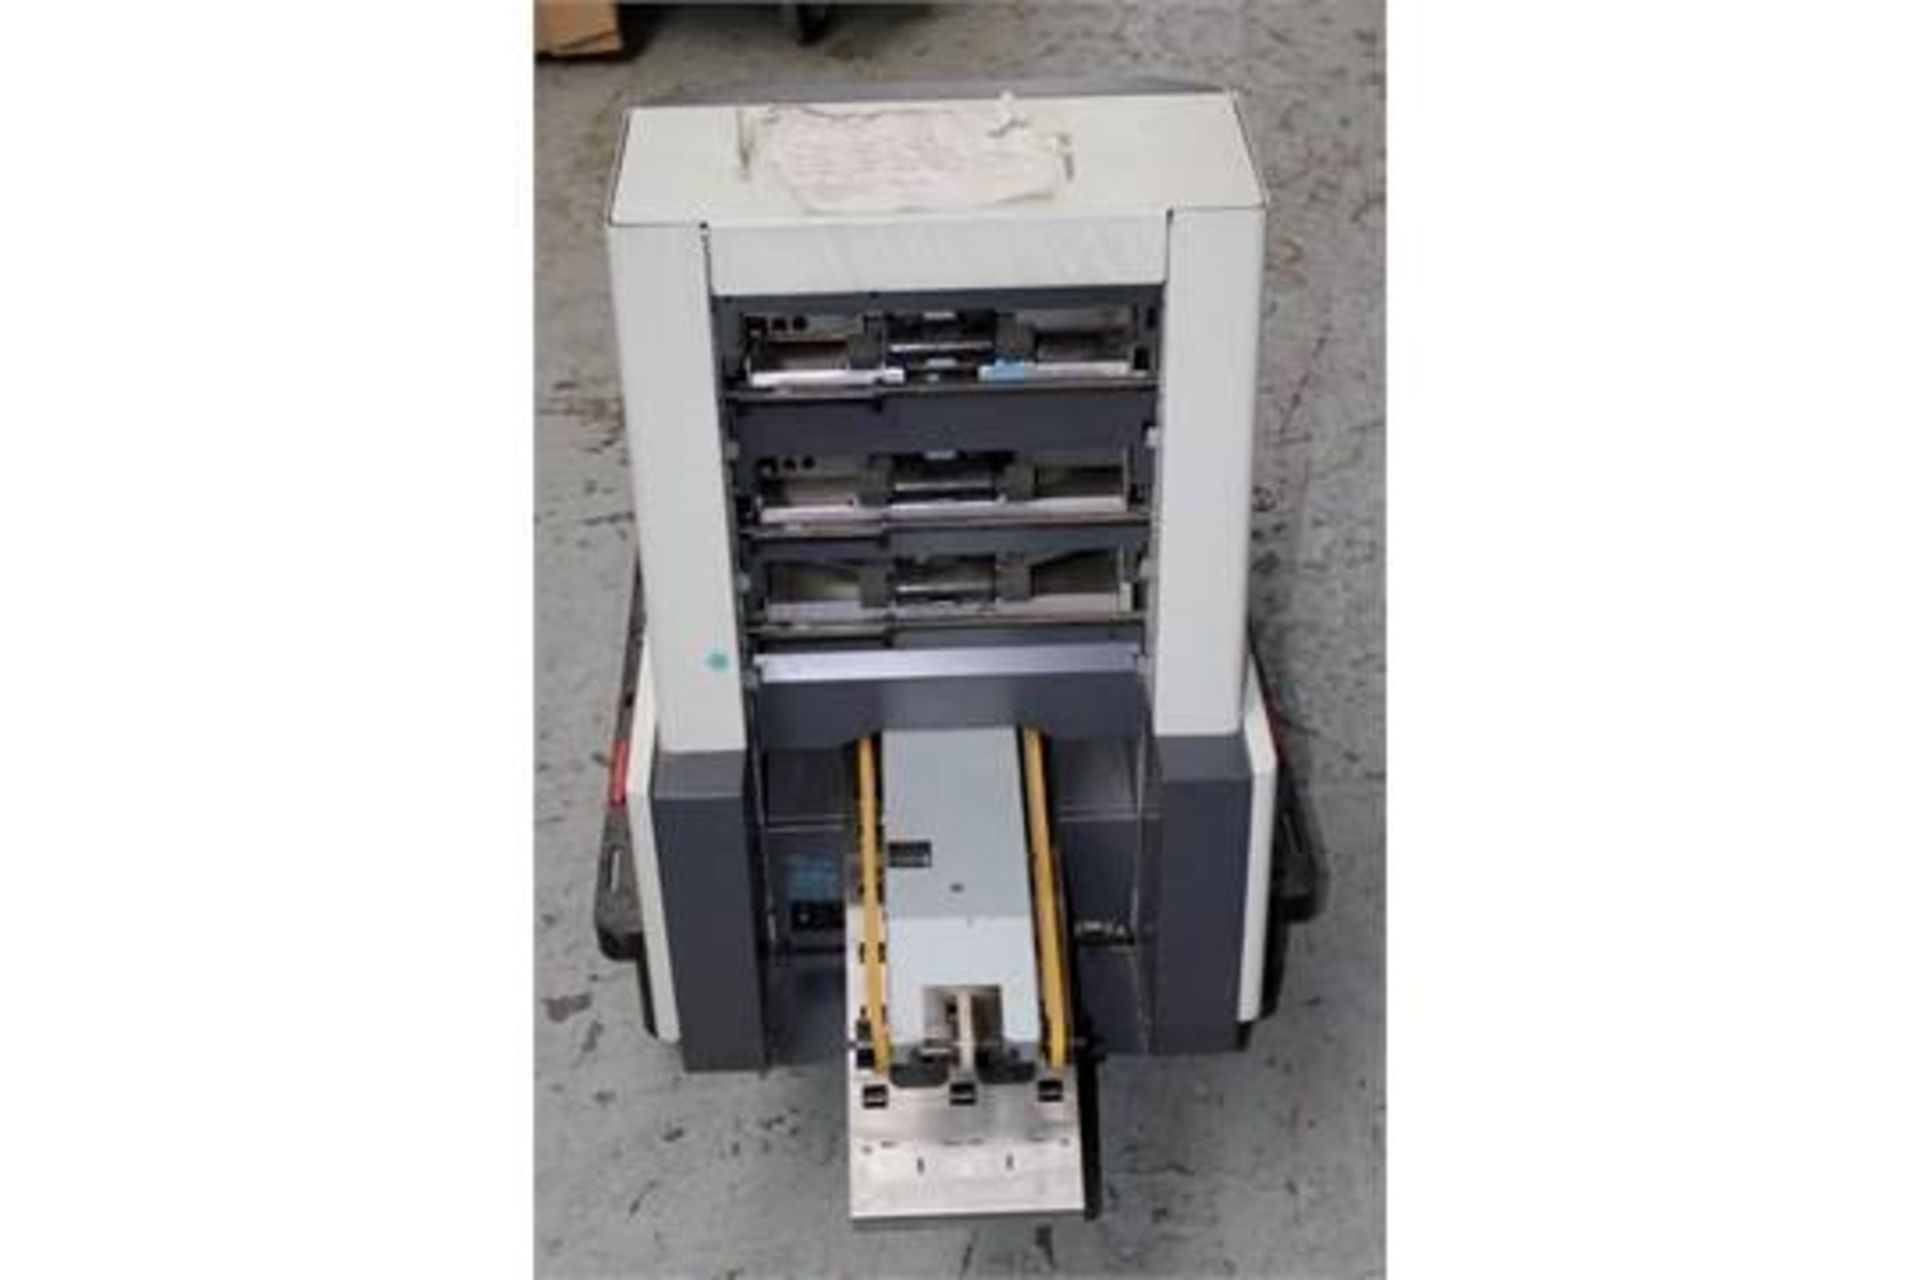 1 x Francotyp-Postalia Heavy Duty Franking Machine - CL011 - Location: Altrincham WA14 - Item powers - Image 2 of 5